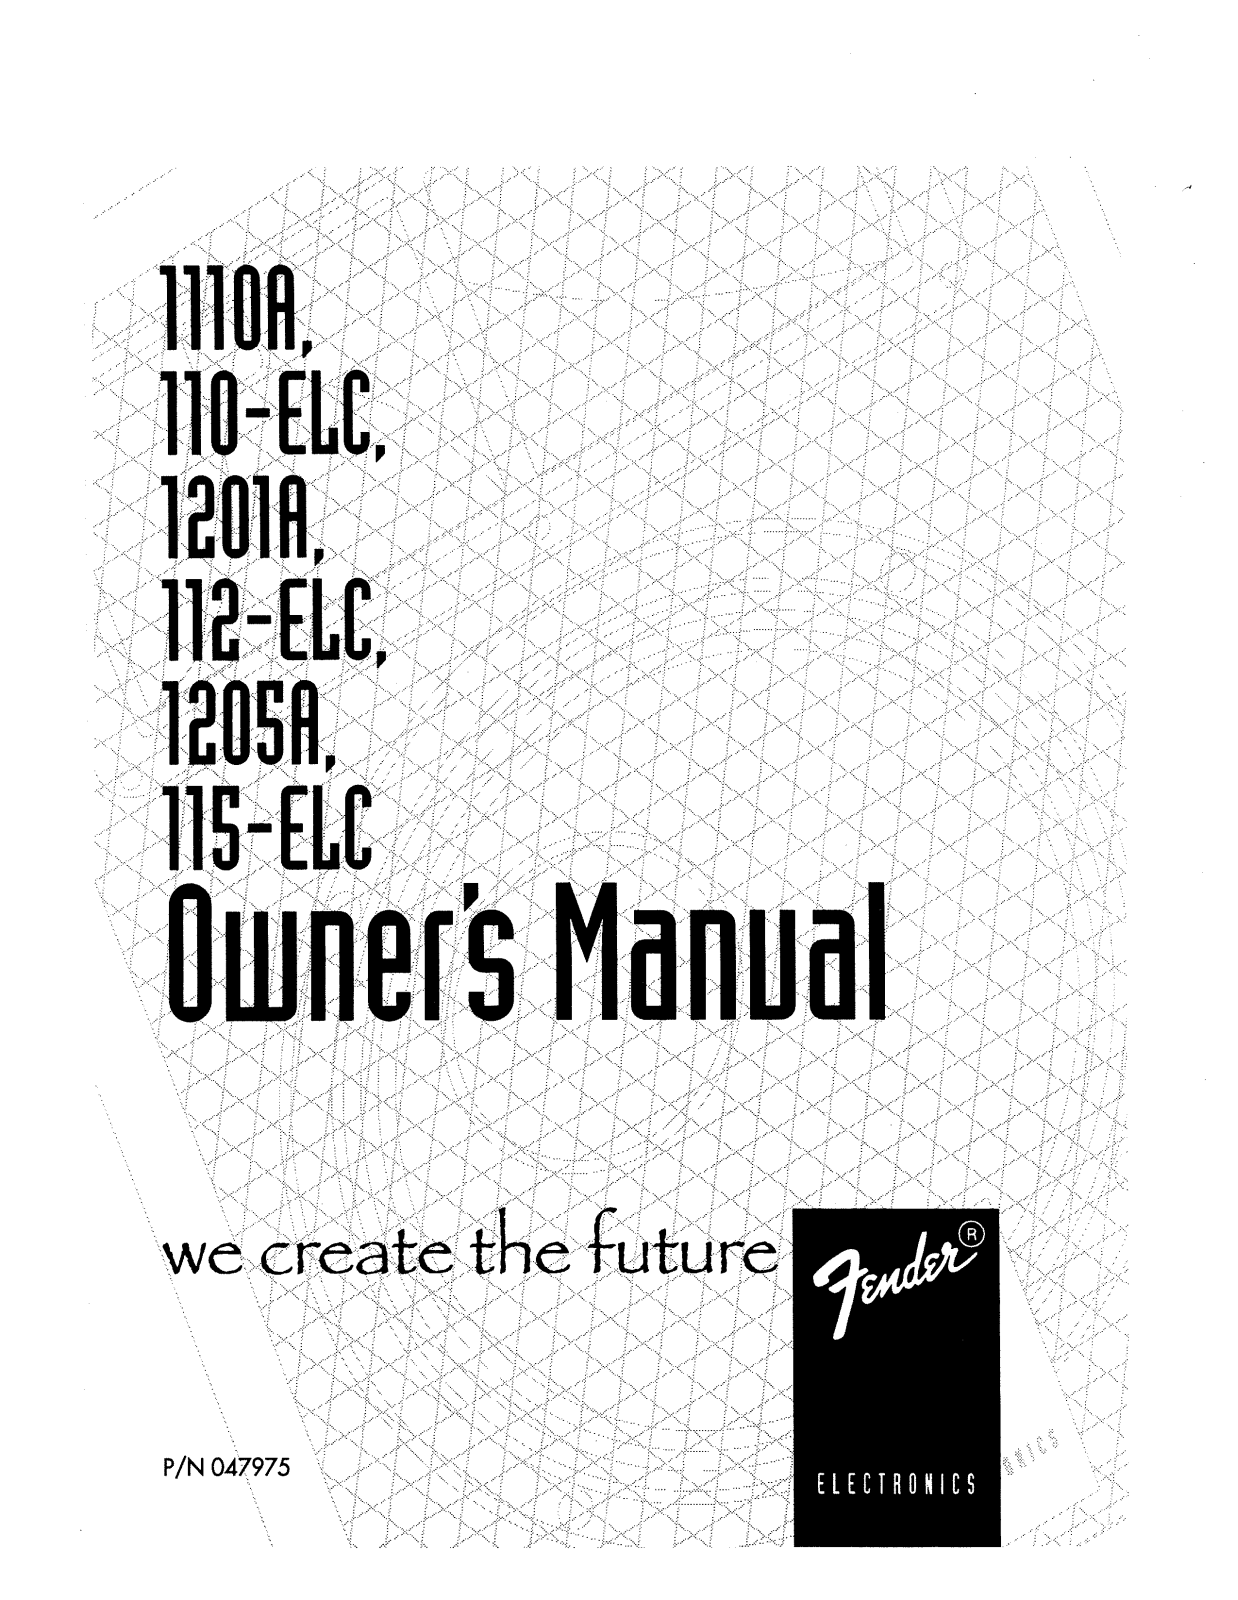 Fender 1205A, 110-ELC, 115-ELC, 1201A, 112-ELC Manual